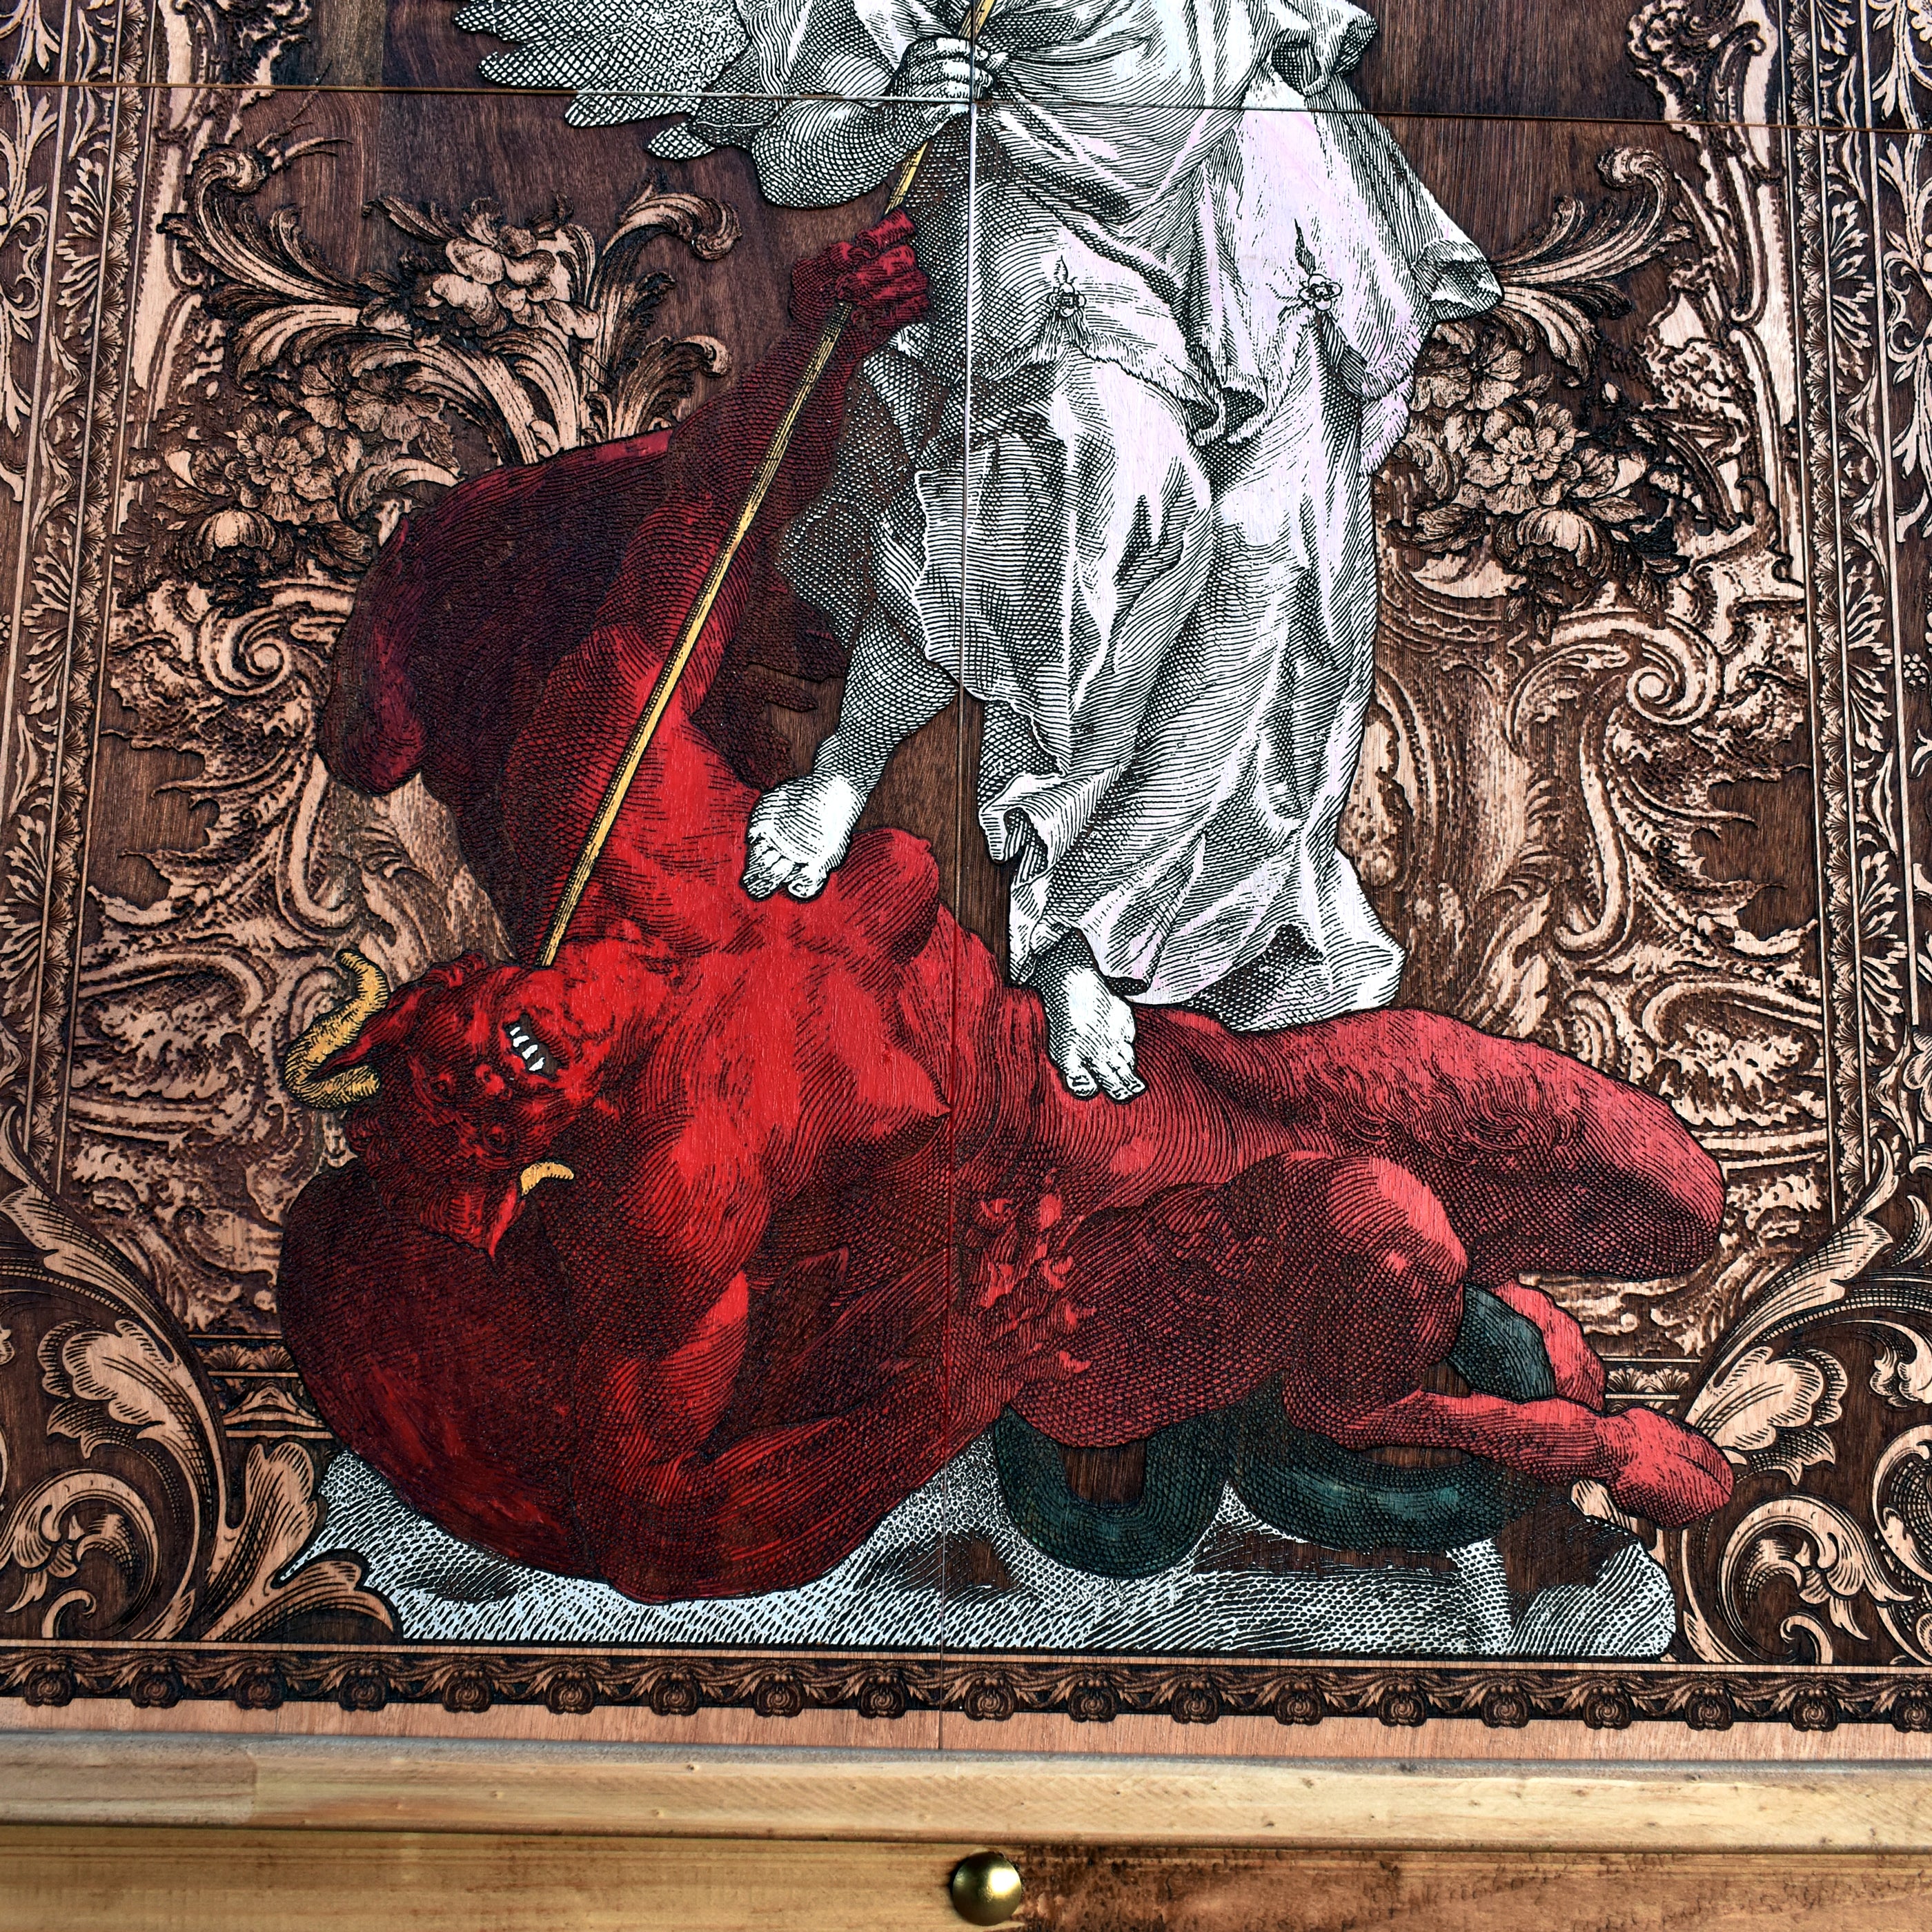 St Michael The Archangel - Mega Size - 4 Wood Pieces